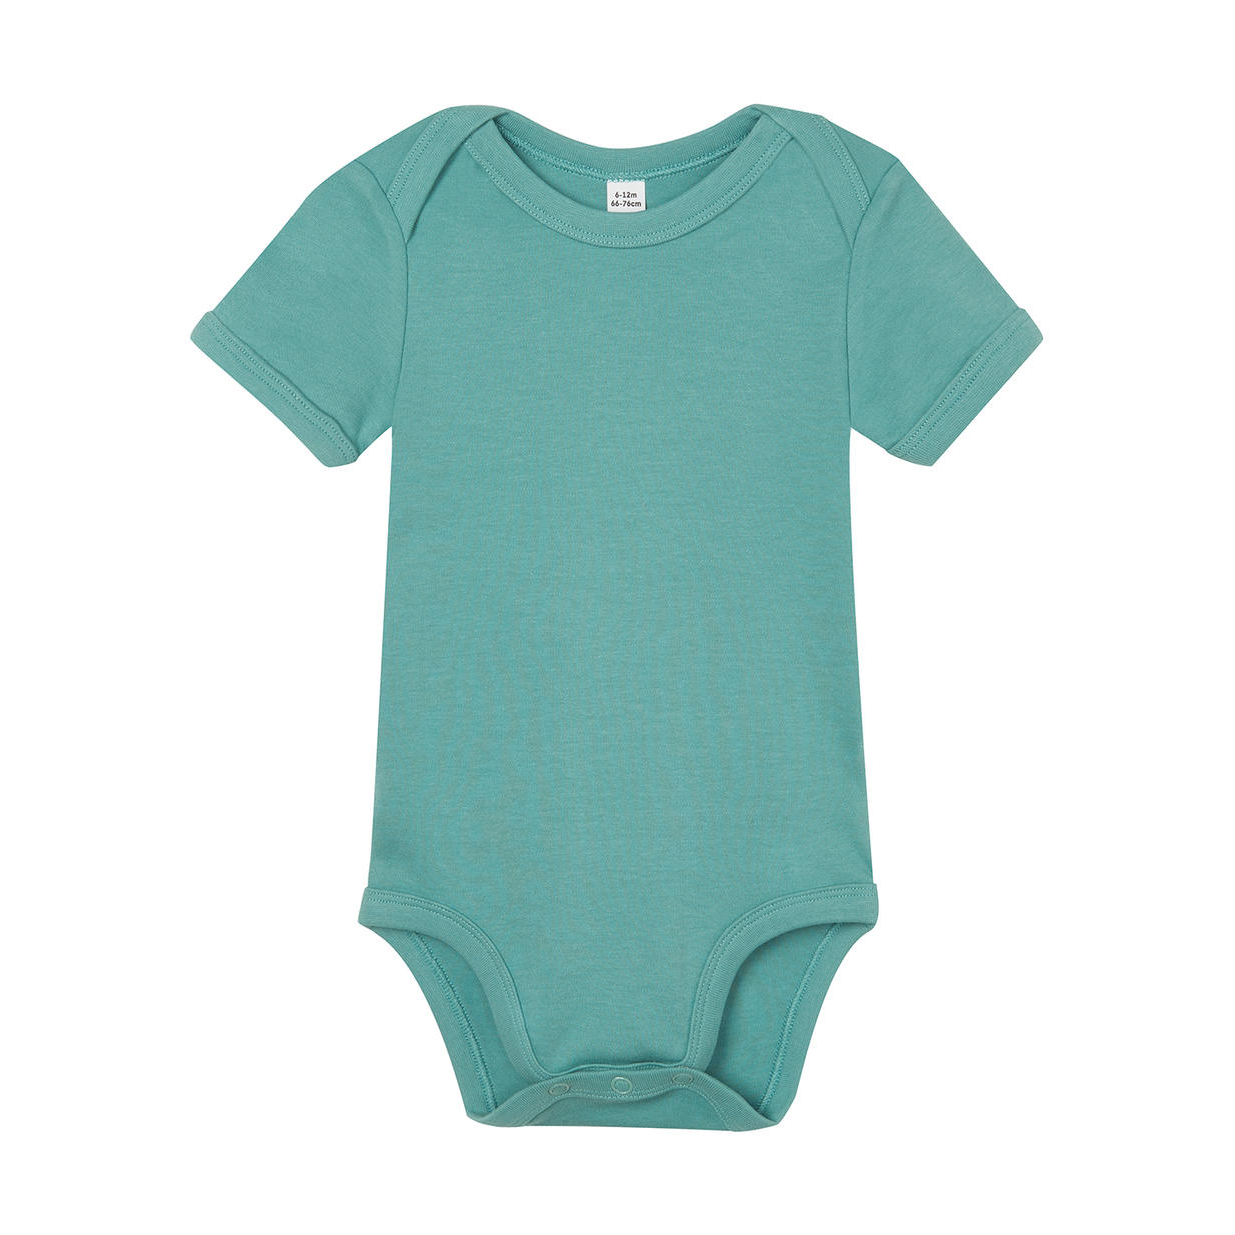 Dětské body Babybugz Organic Baby Short - zelené-modré, 6-12 měsíců